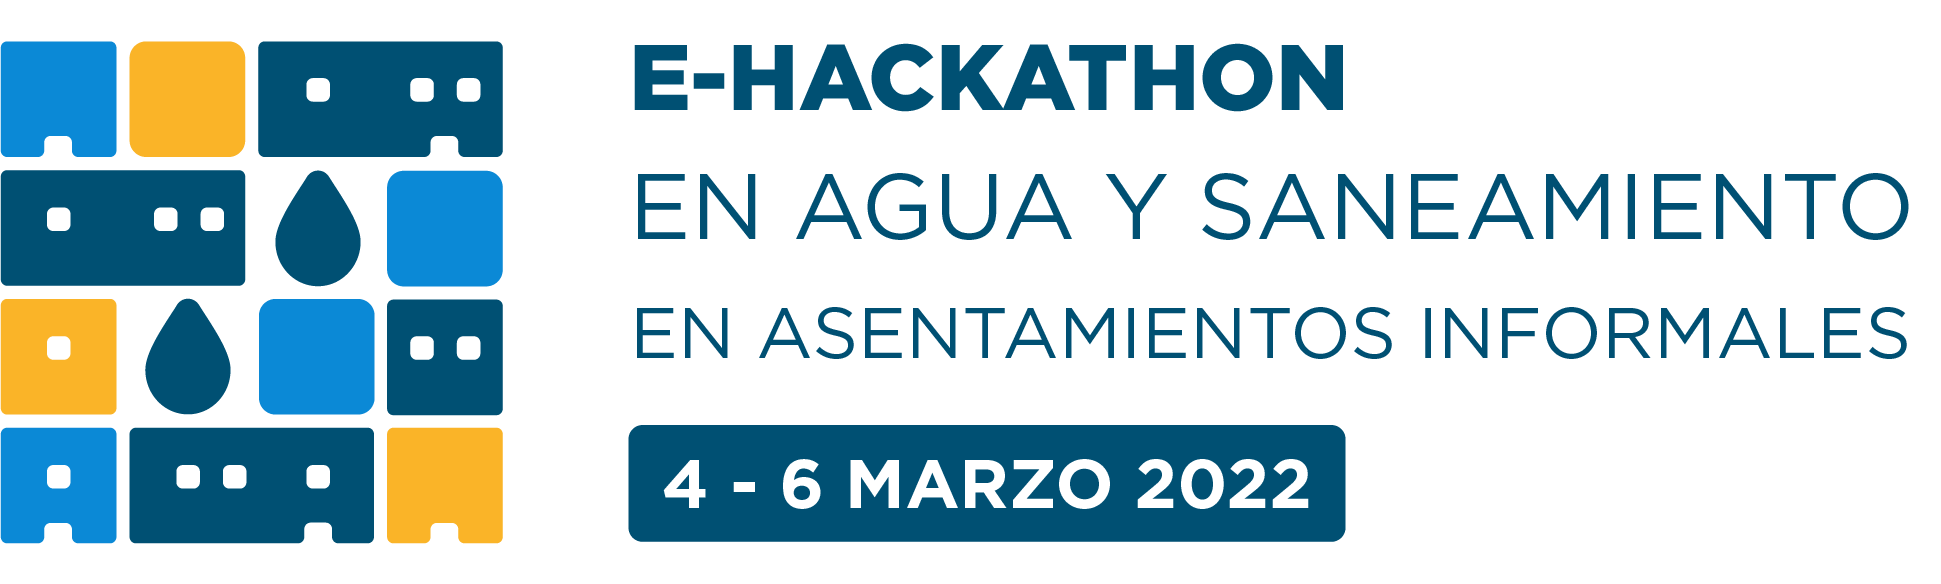 e-Hackathon 2022